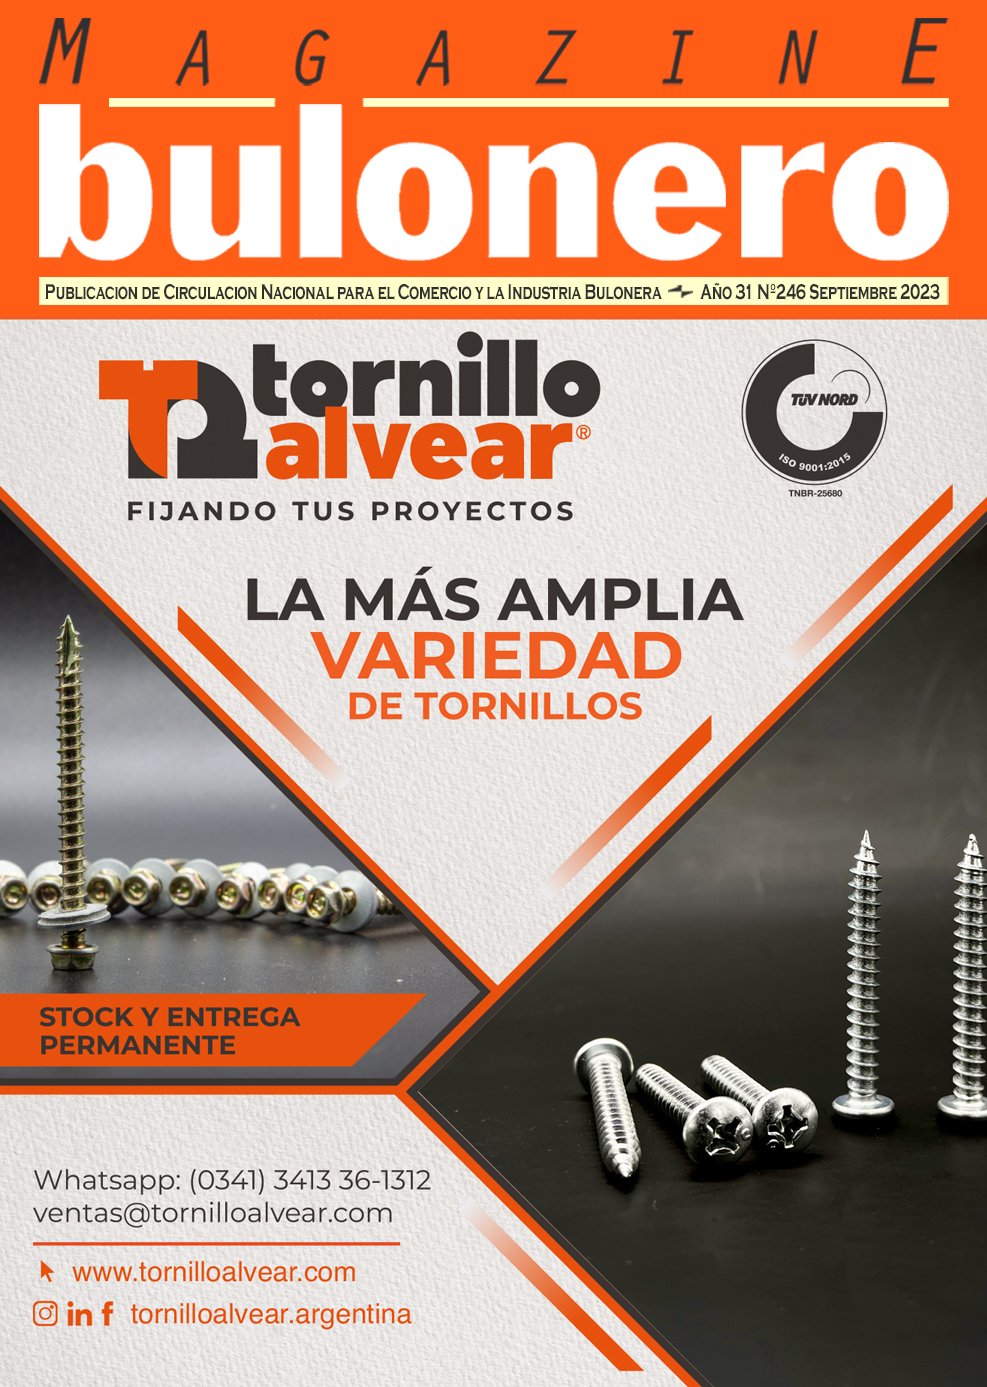 Tapa Magazine Bulonero Tornillo Alvear Septiembre 2023